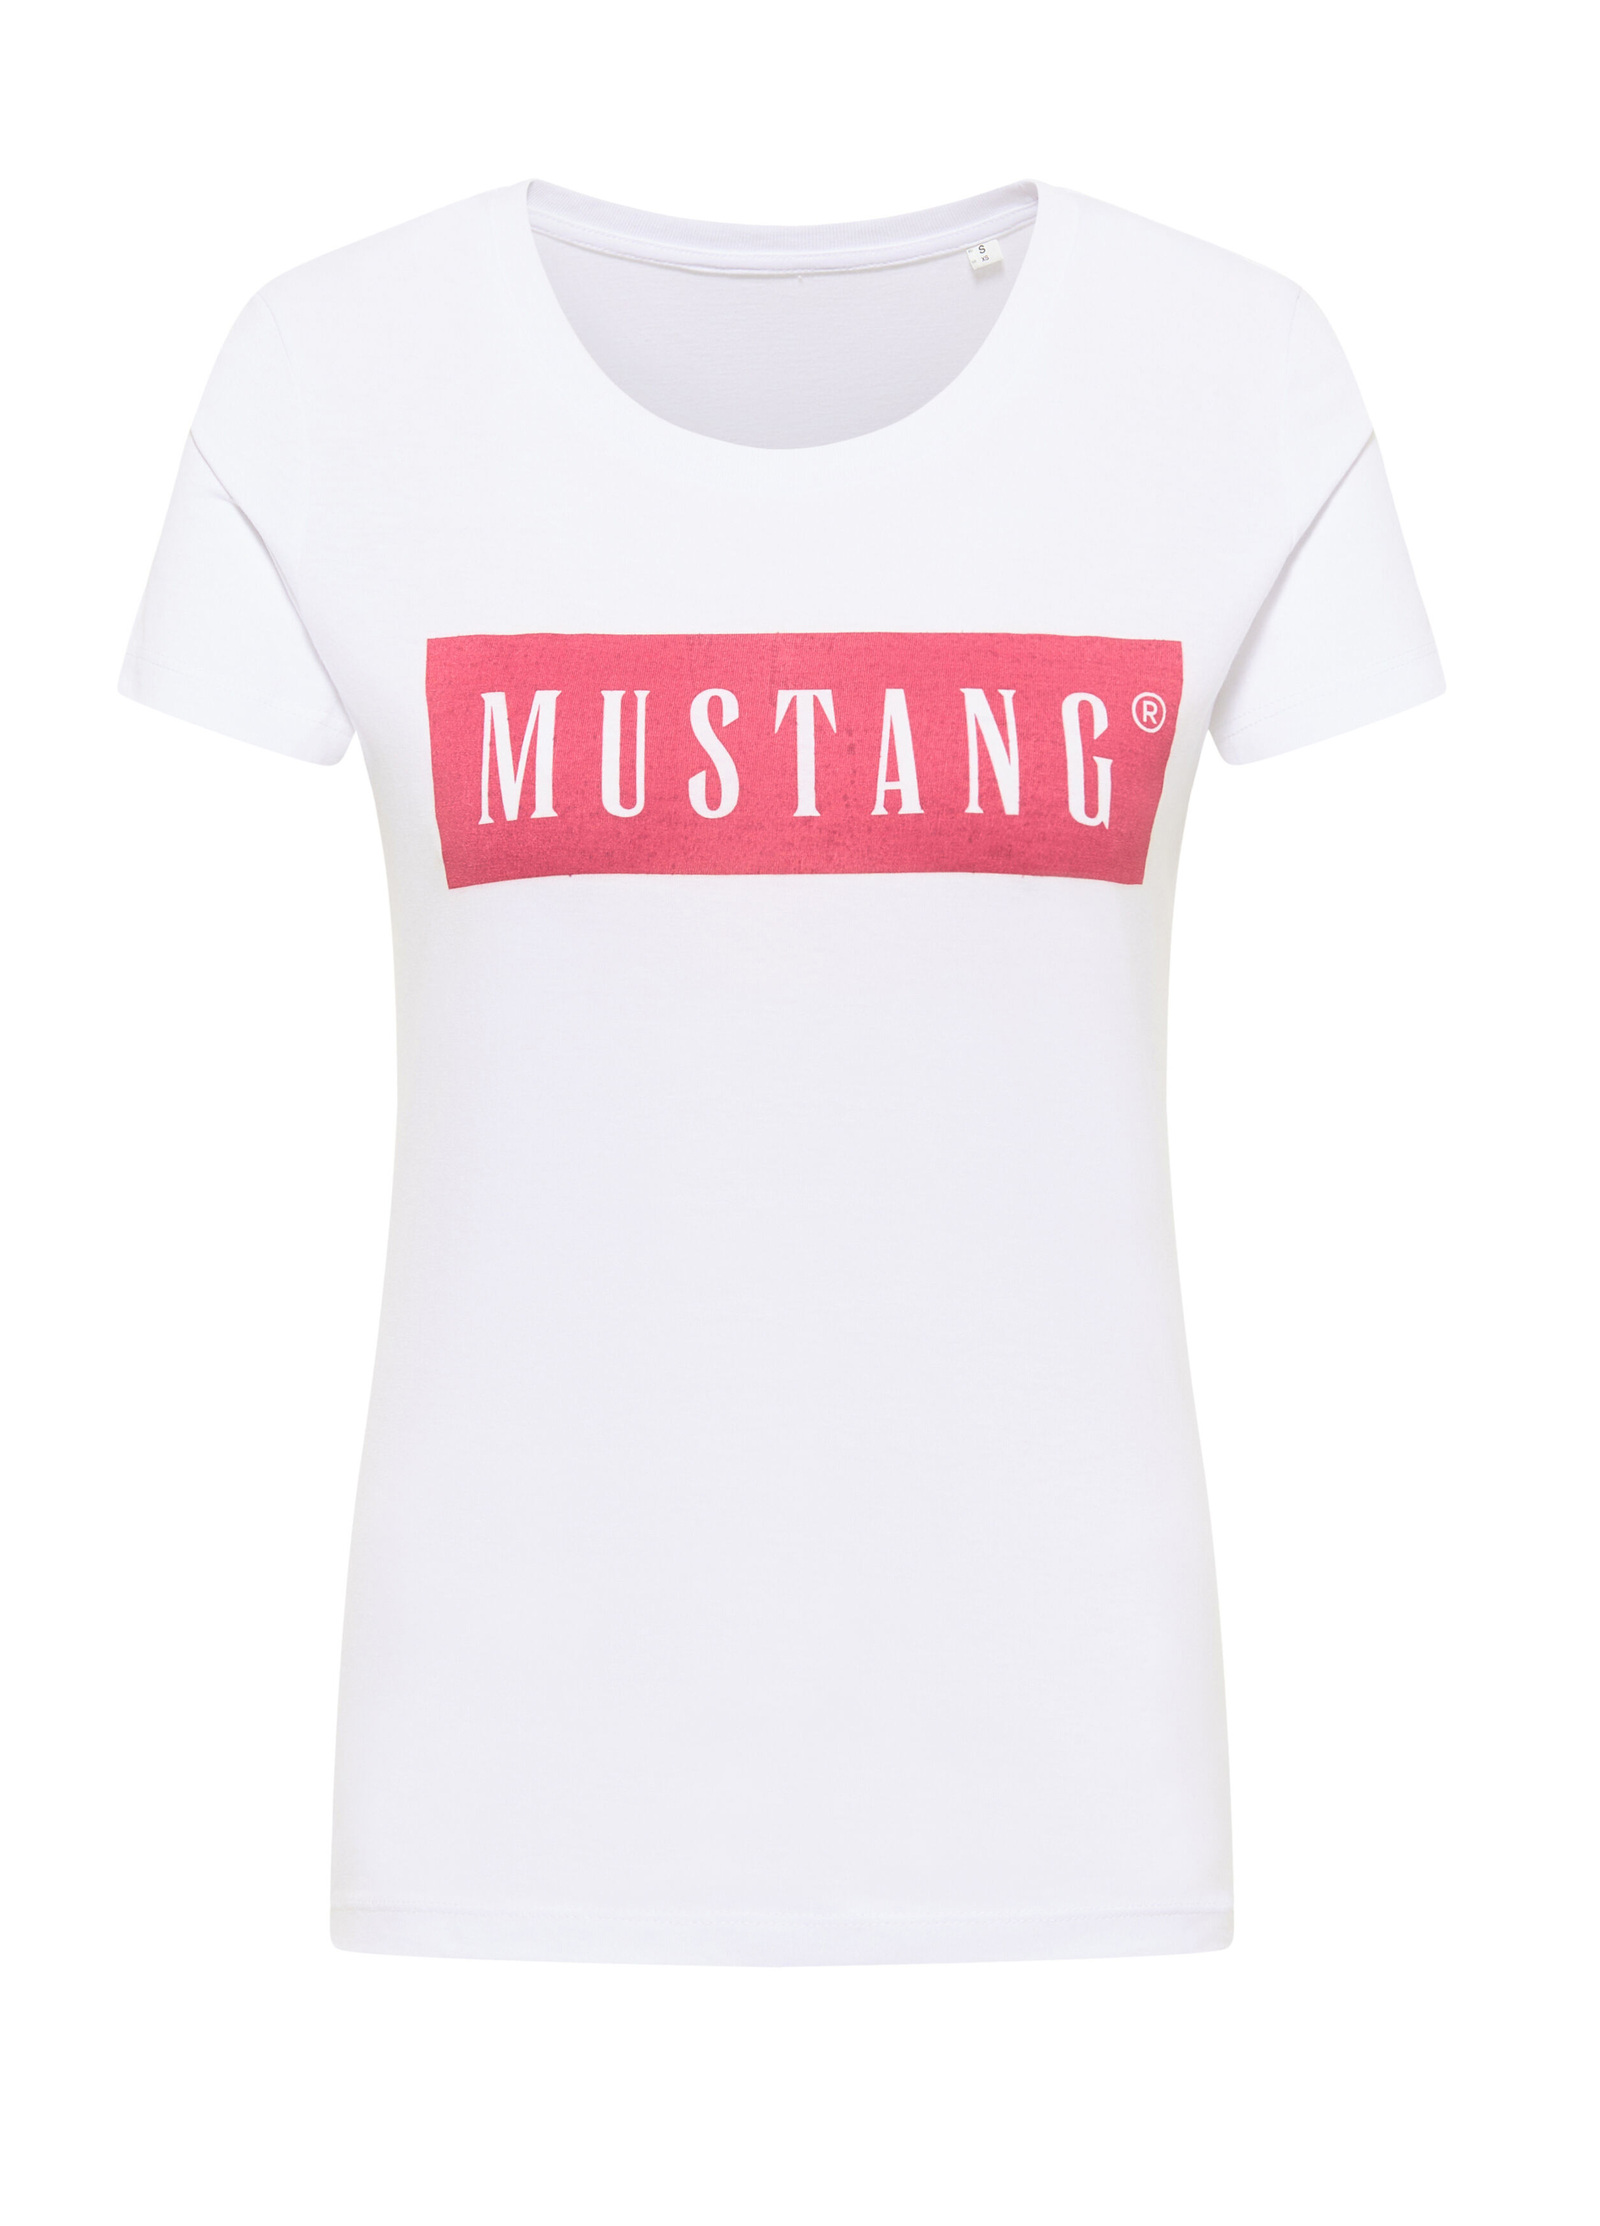 Logo Mustang® Alina L General - C Größe White Tee